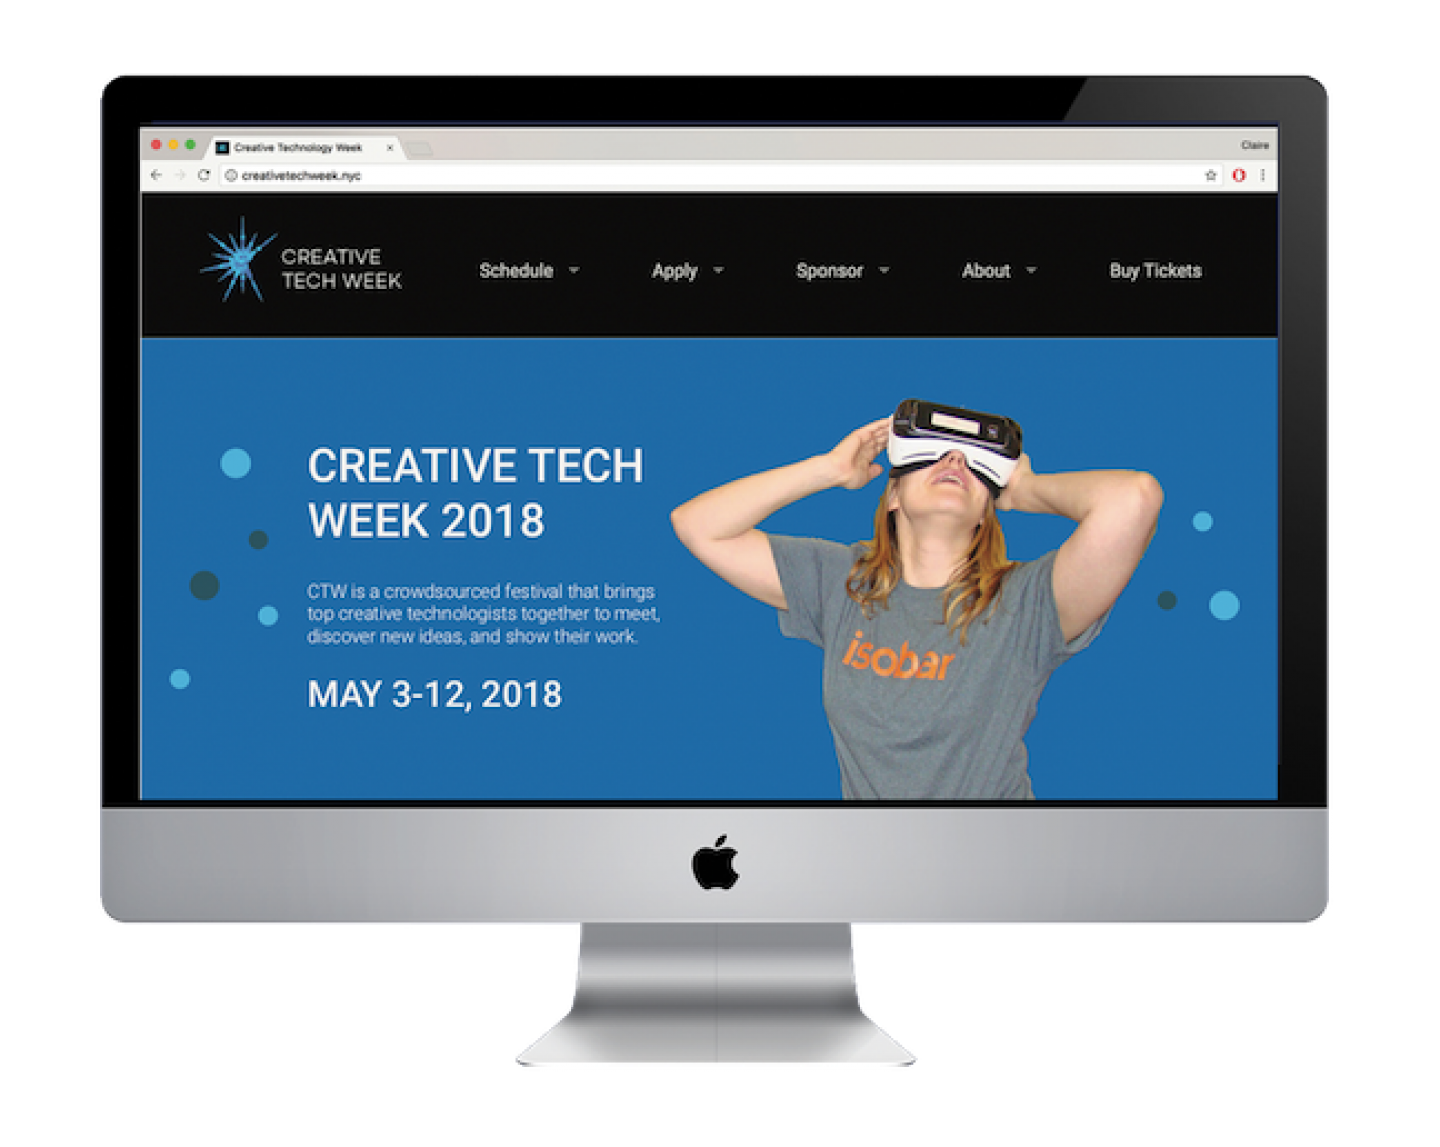 Creative Tech Week